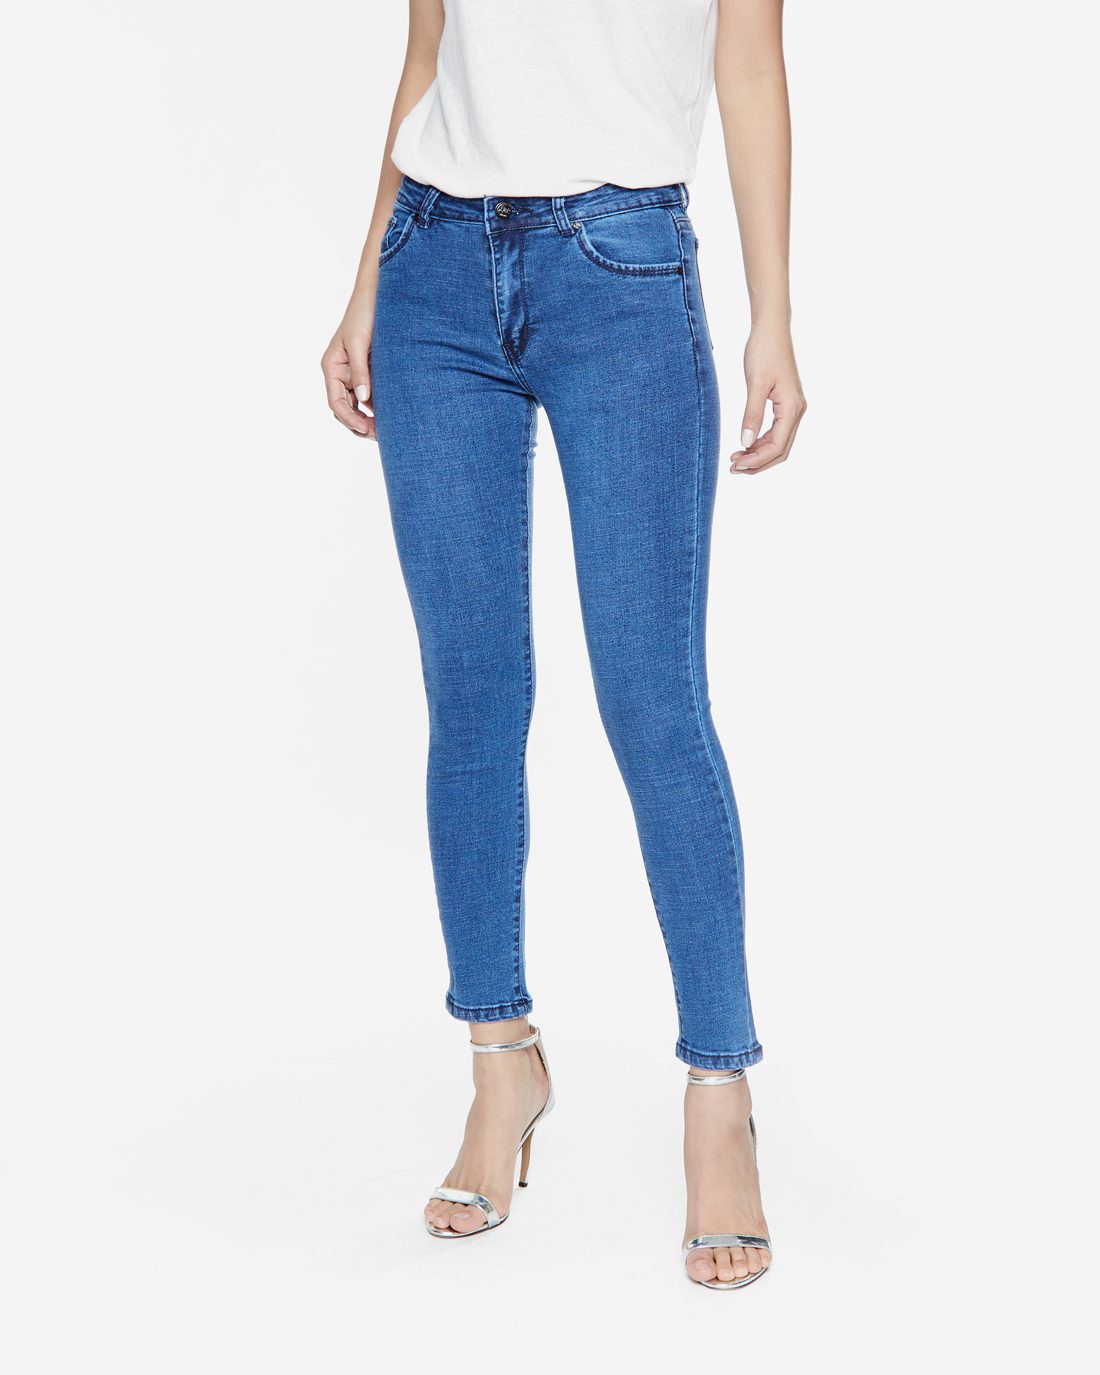 Top 10 shop quần jeans nữ đẹp giá rẻ tại TPHCM